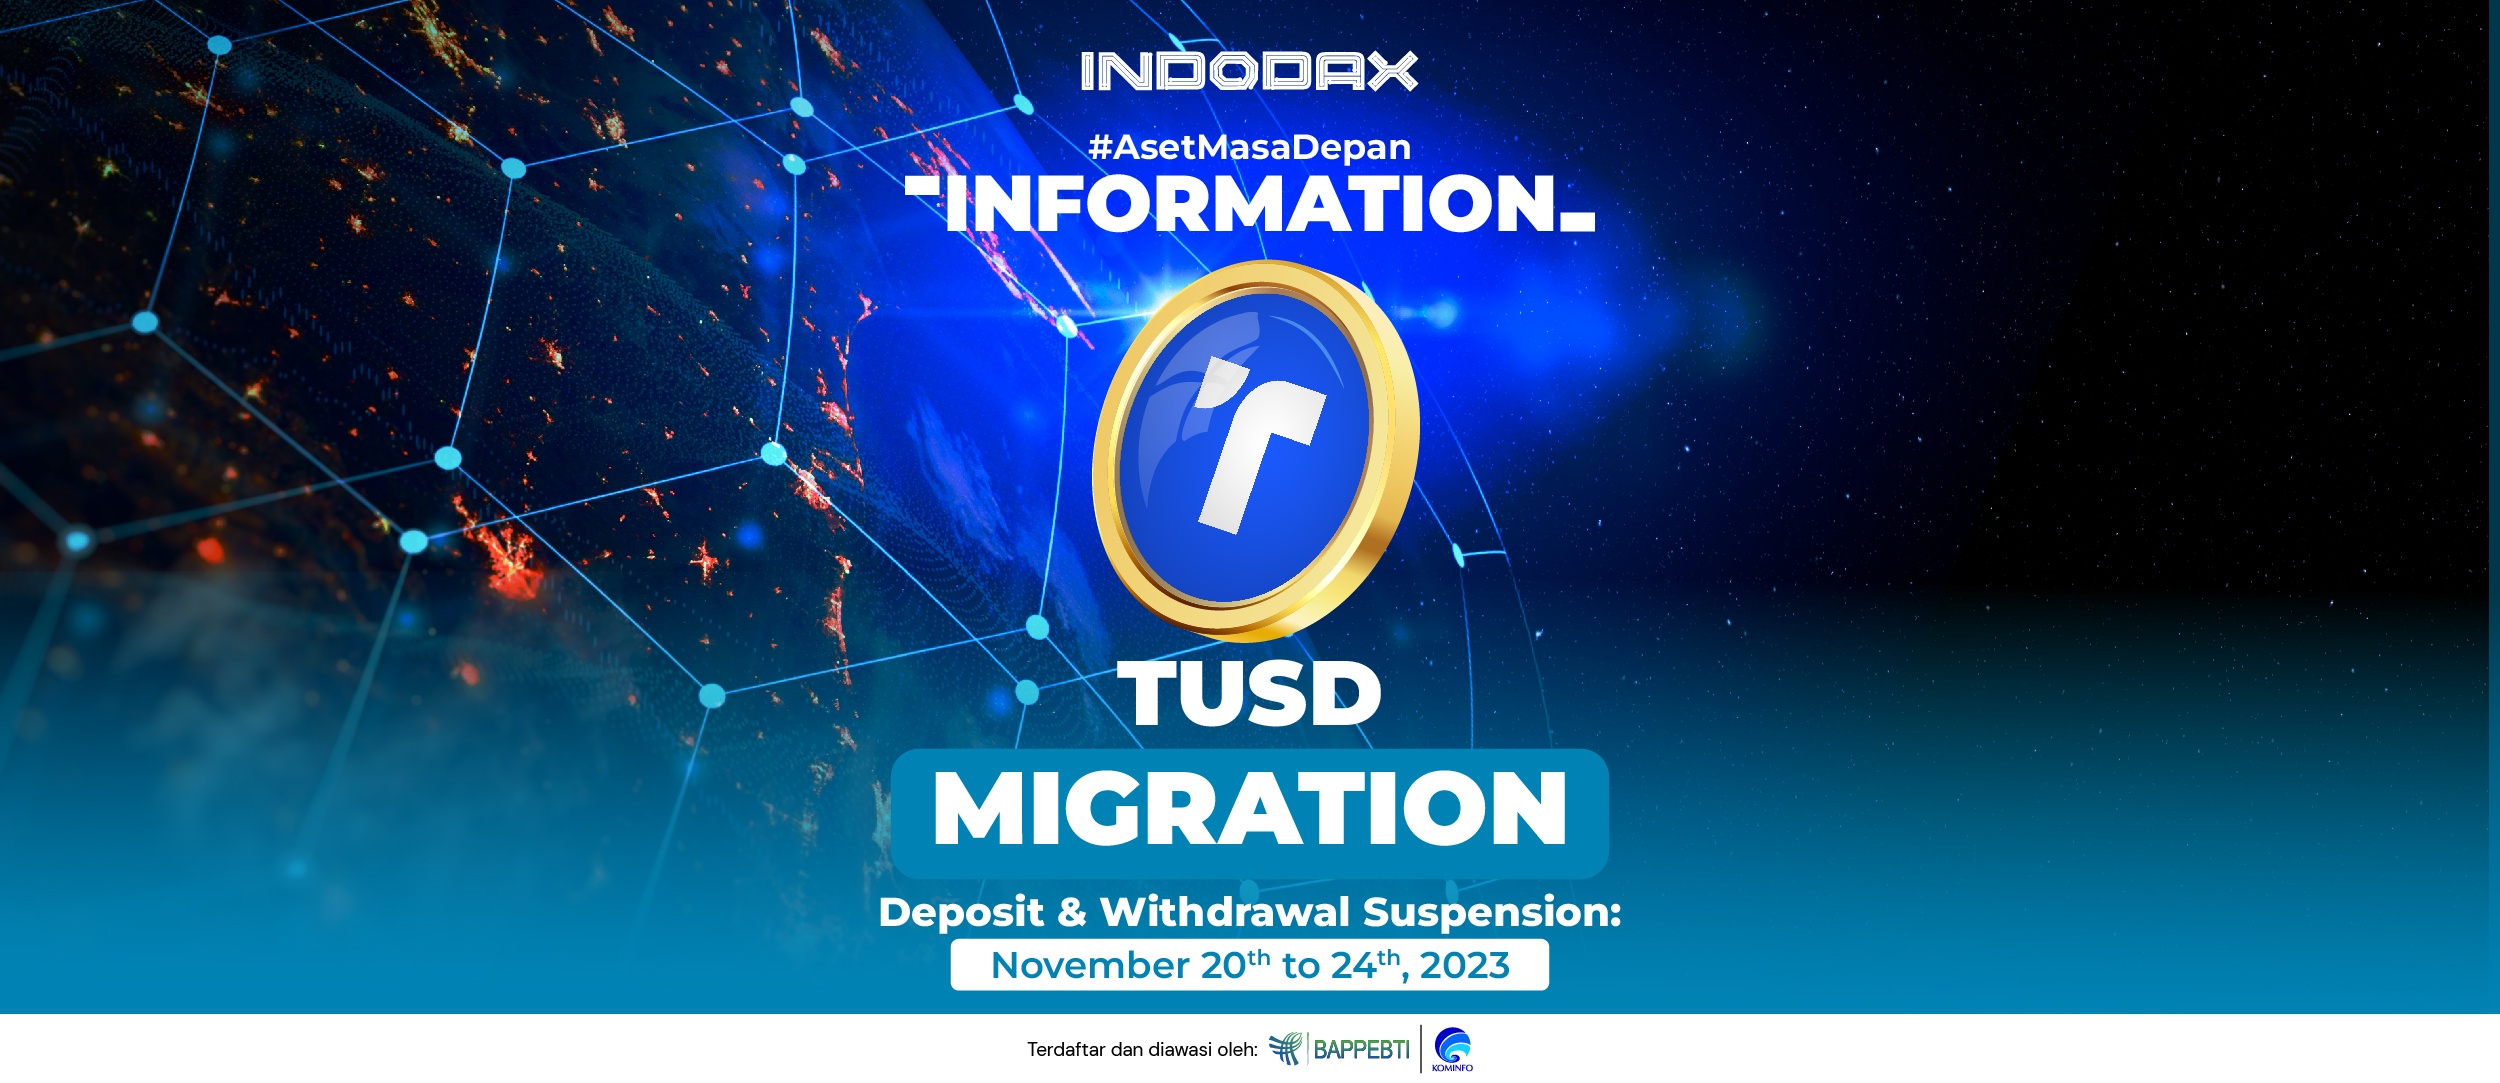 Dengan ini diinformasikan bahwa INDODAX akan mendukung migrasi alamat Smart Contract aset kripto TUSD pada jaringan BEP20 mulai dari Senin, 20 November 2023 pukul 14.00 WIB hingga Jumat, 24 November 2023 pukul 14.00 WIB.